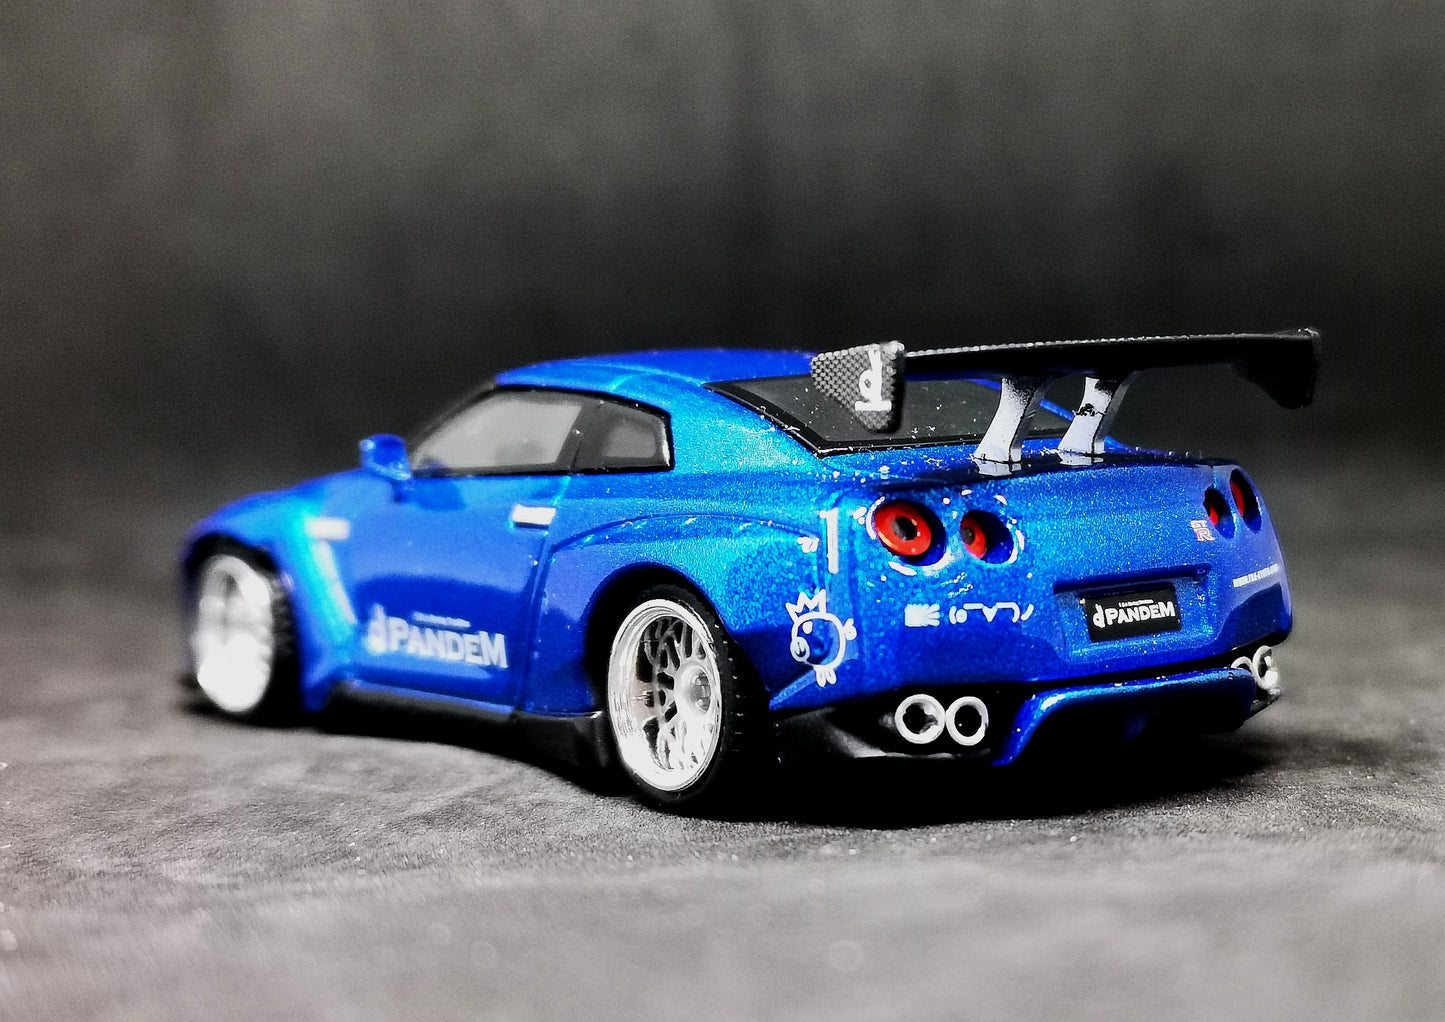 Mini GT #96 Pandem👌Nissan GT-R (Metallic Blue)